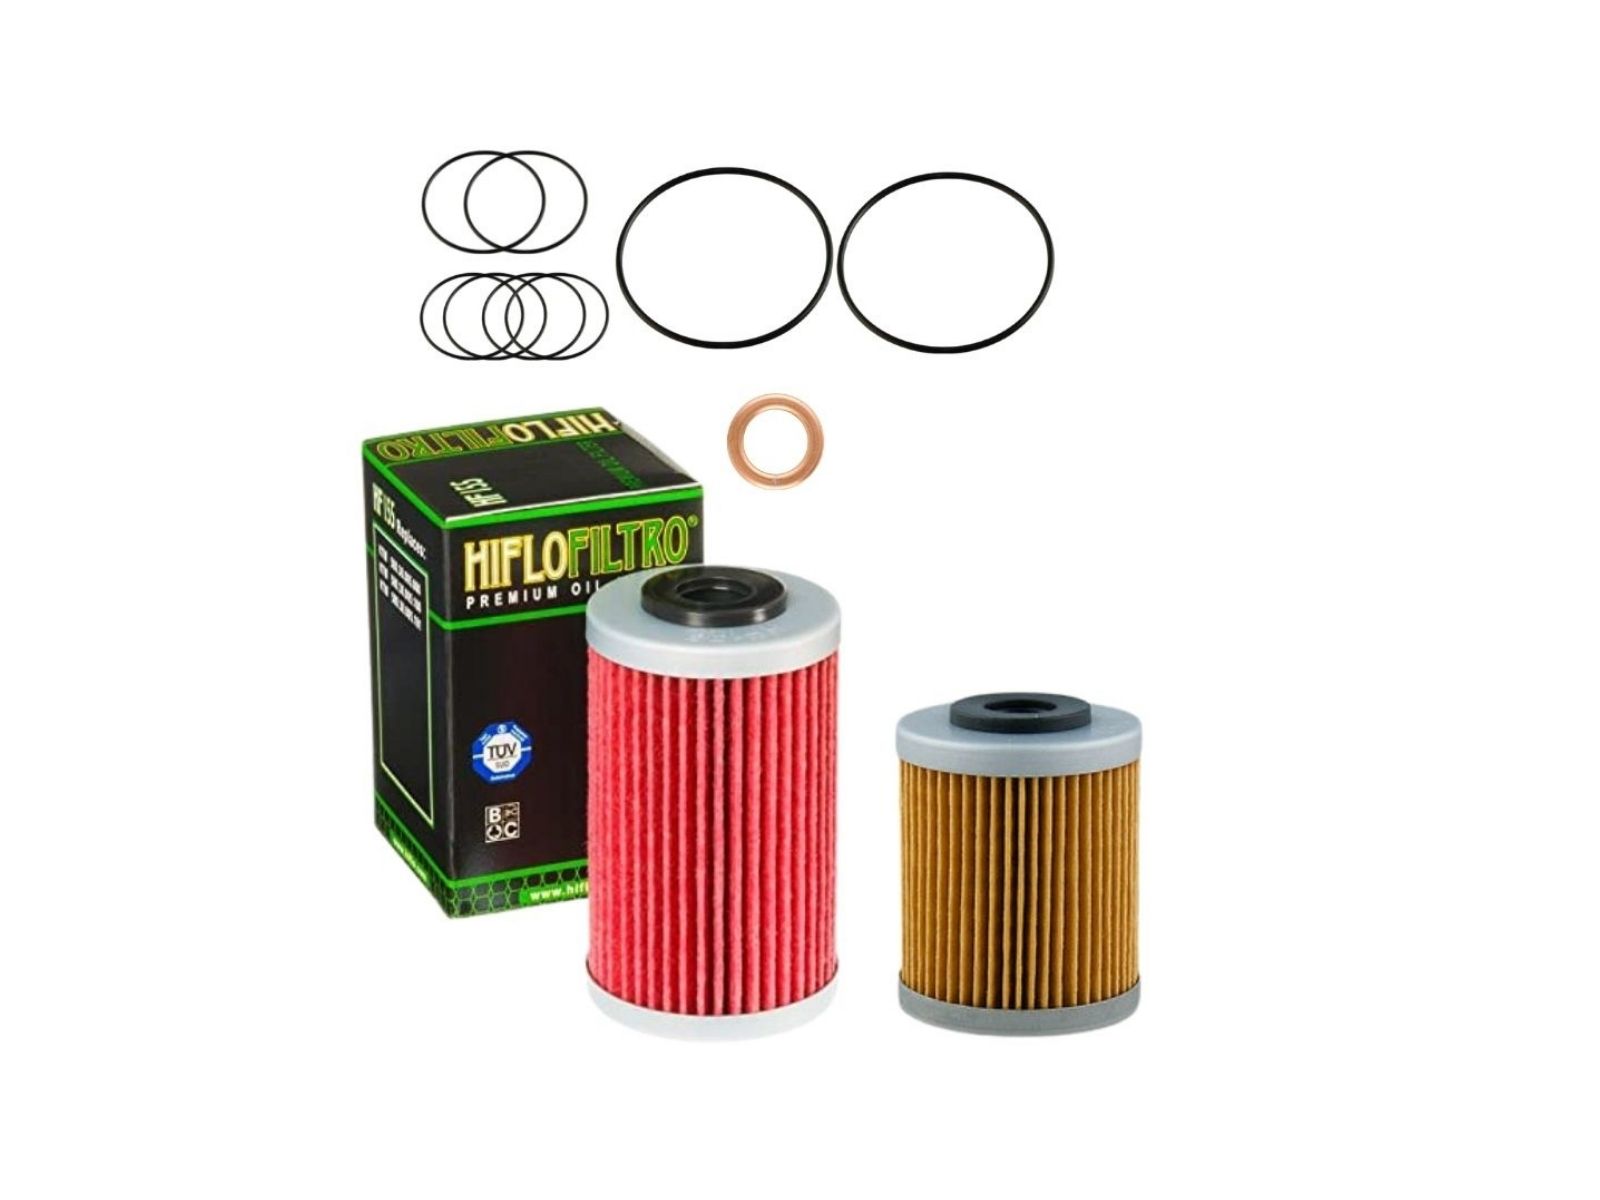 Oil filter kit suitable for KTM 690 Enduro SM SMC Duke 07-11